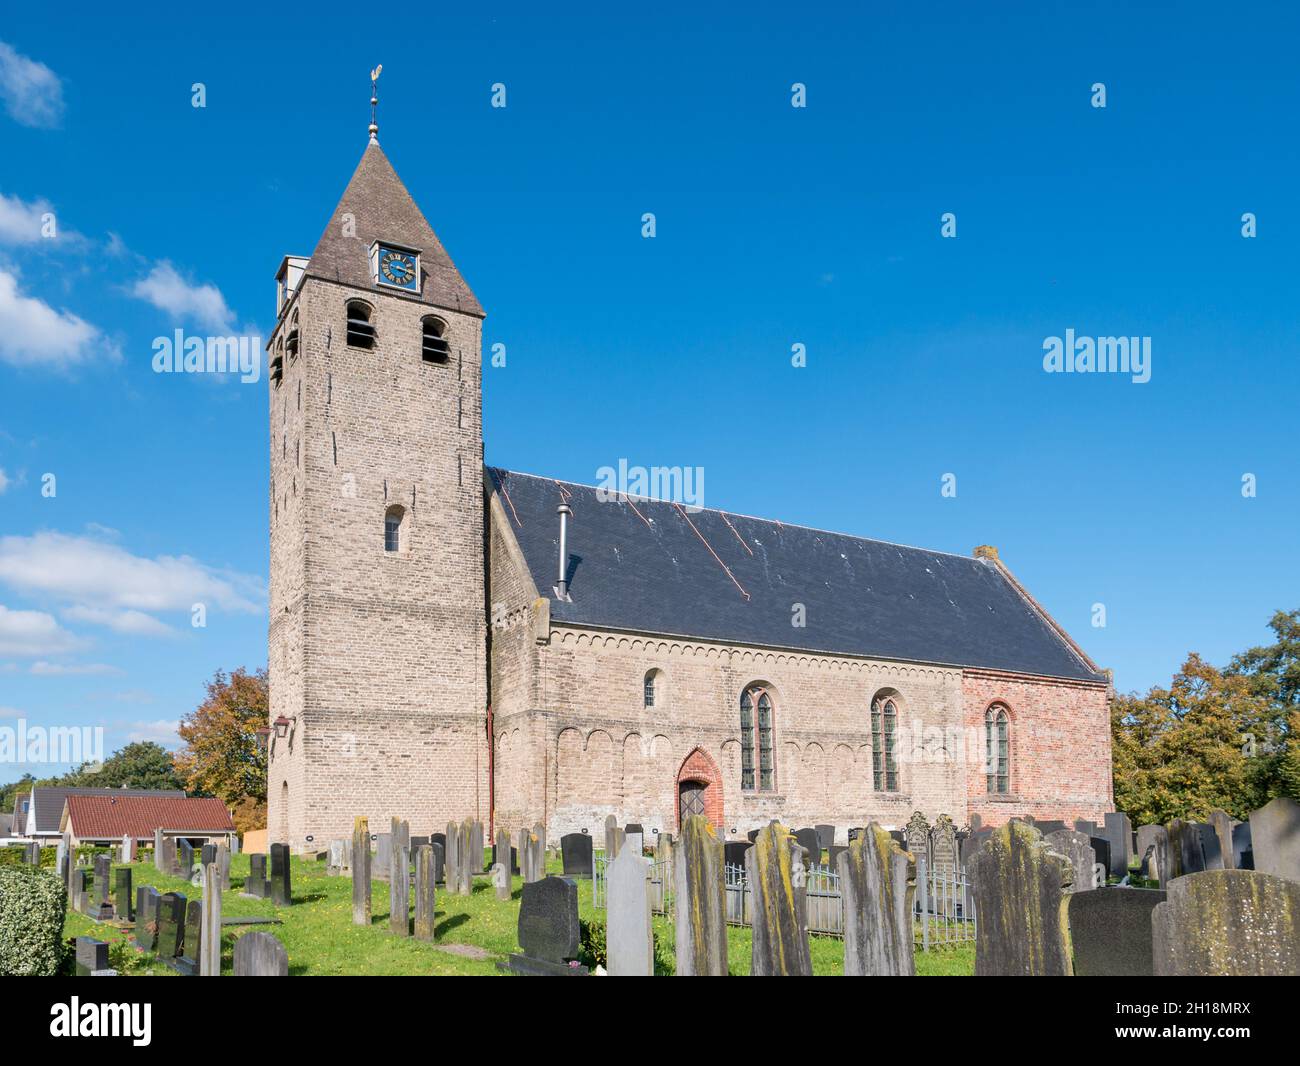 San Agathachurch y cementerio en el pueblo de Oudega, Alde Feanen, Frisia, Países Bajos Foto de stock